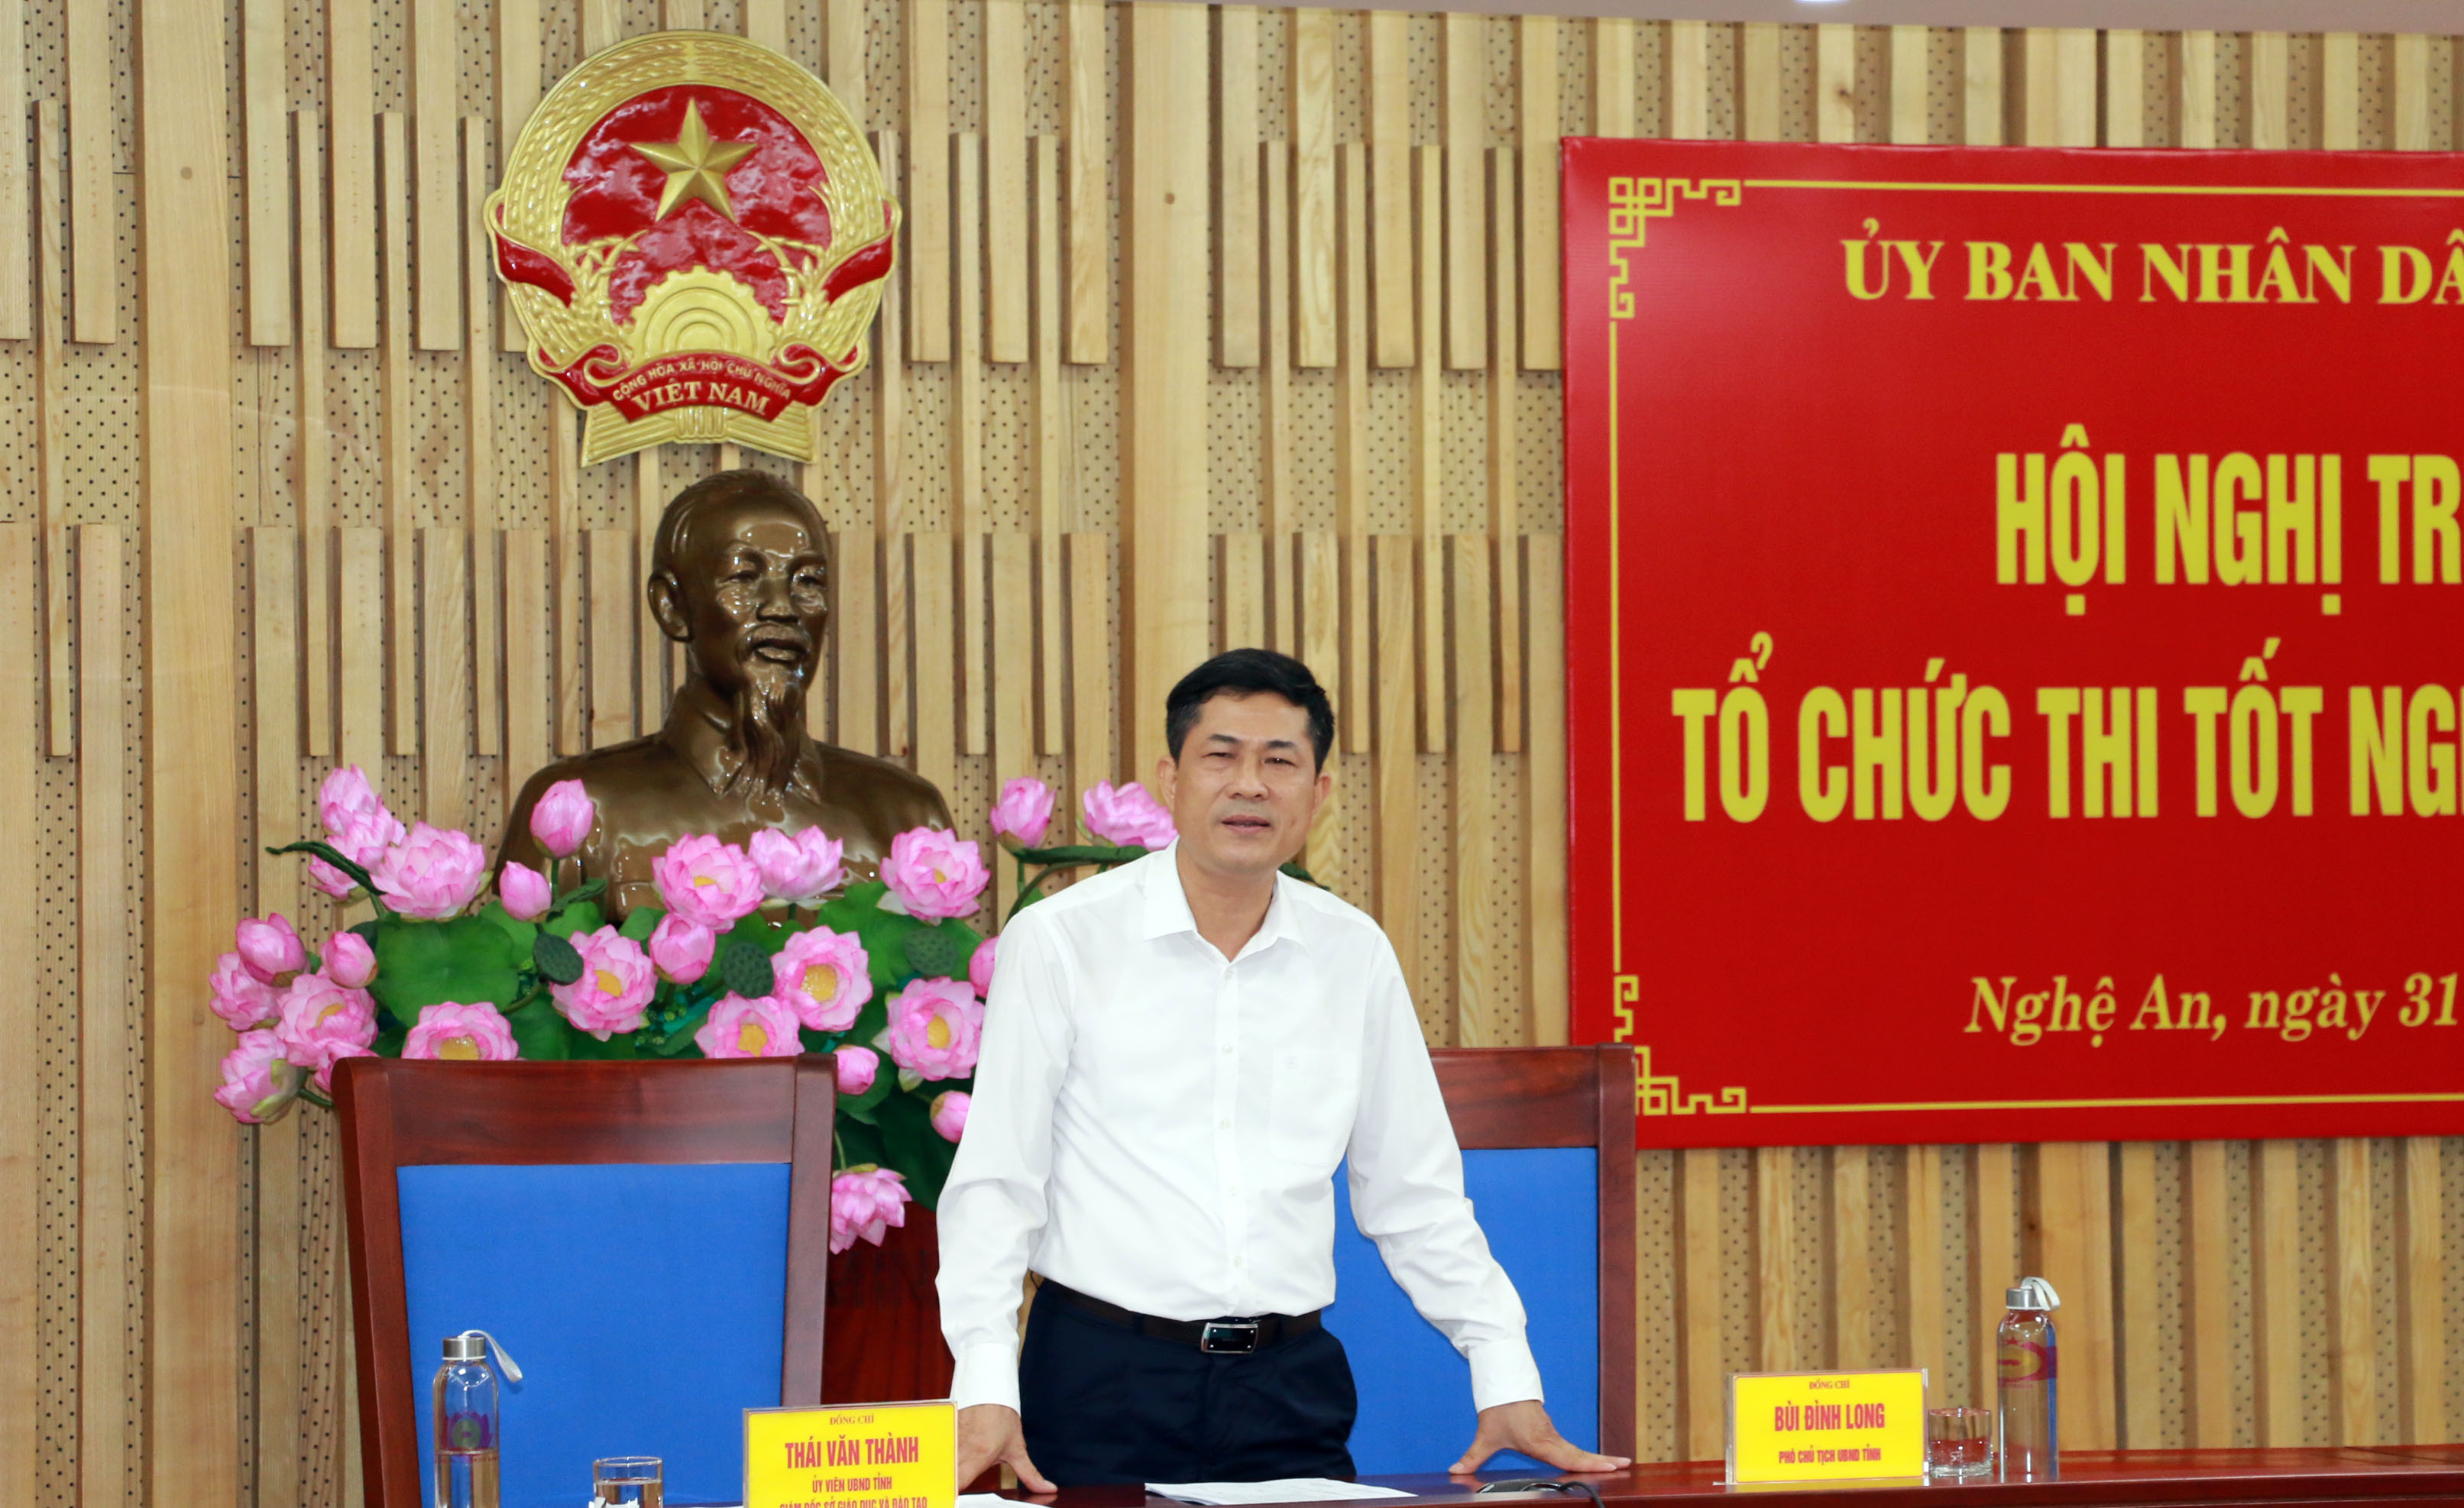 Đồng chí Thái Văn Thành phát biểu về công tác chuẩn bị thi của Nghệ An. Ảnh: Mỹ Hà